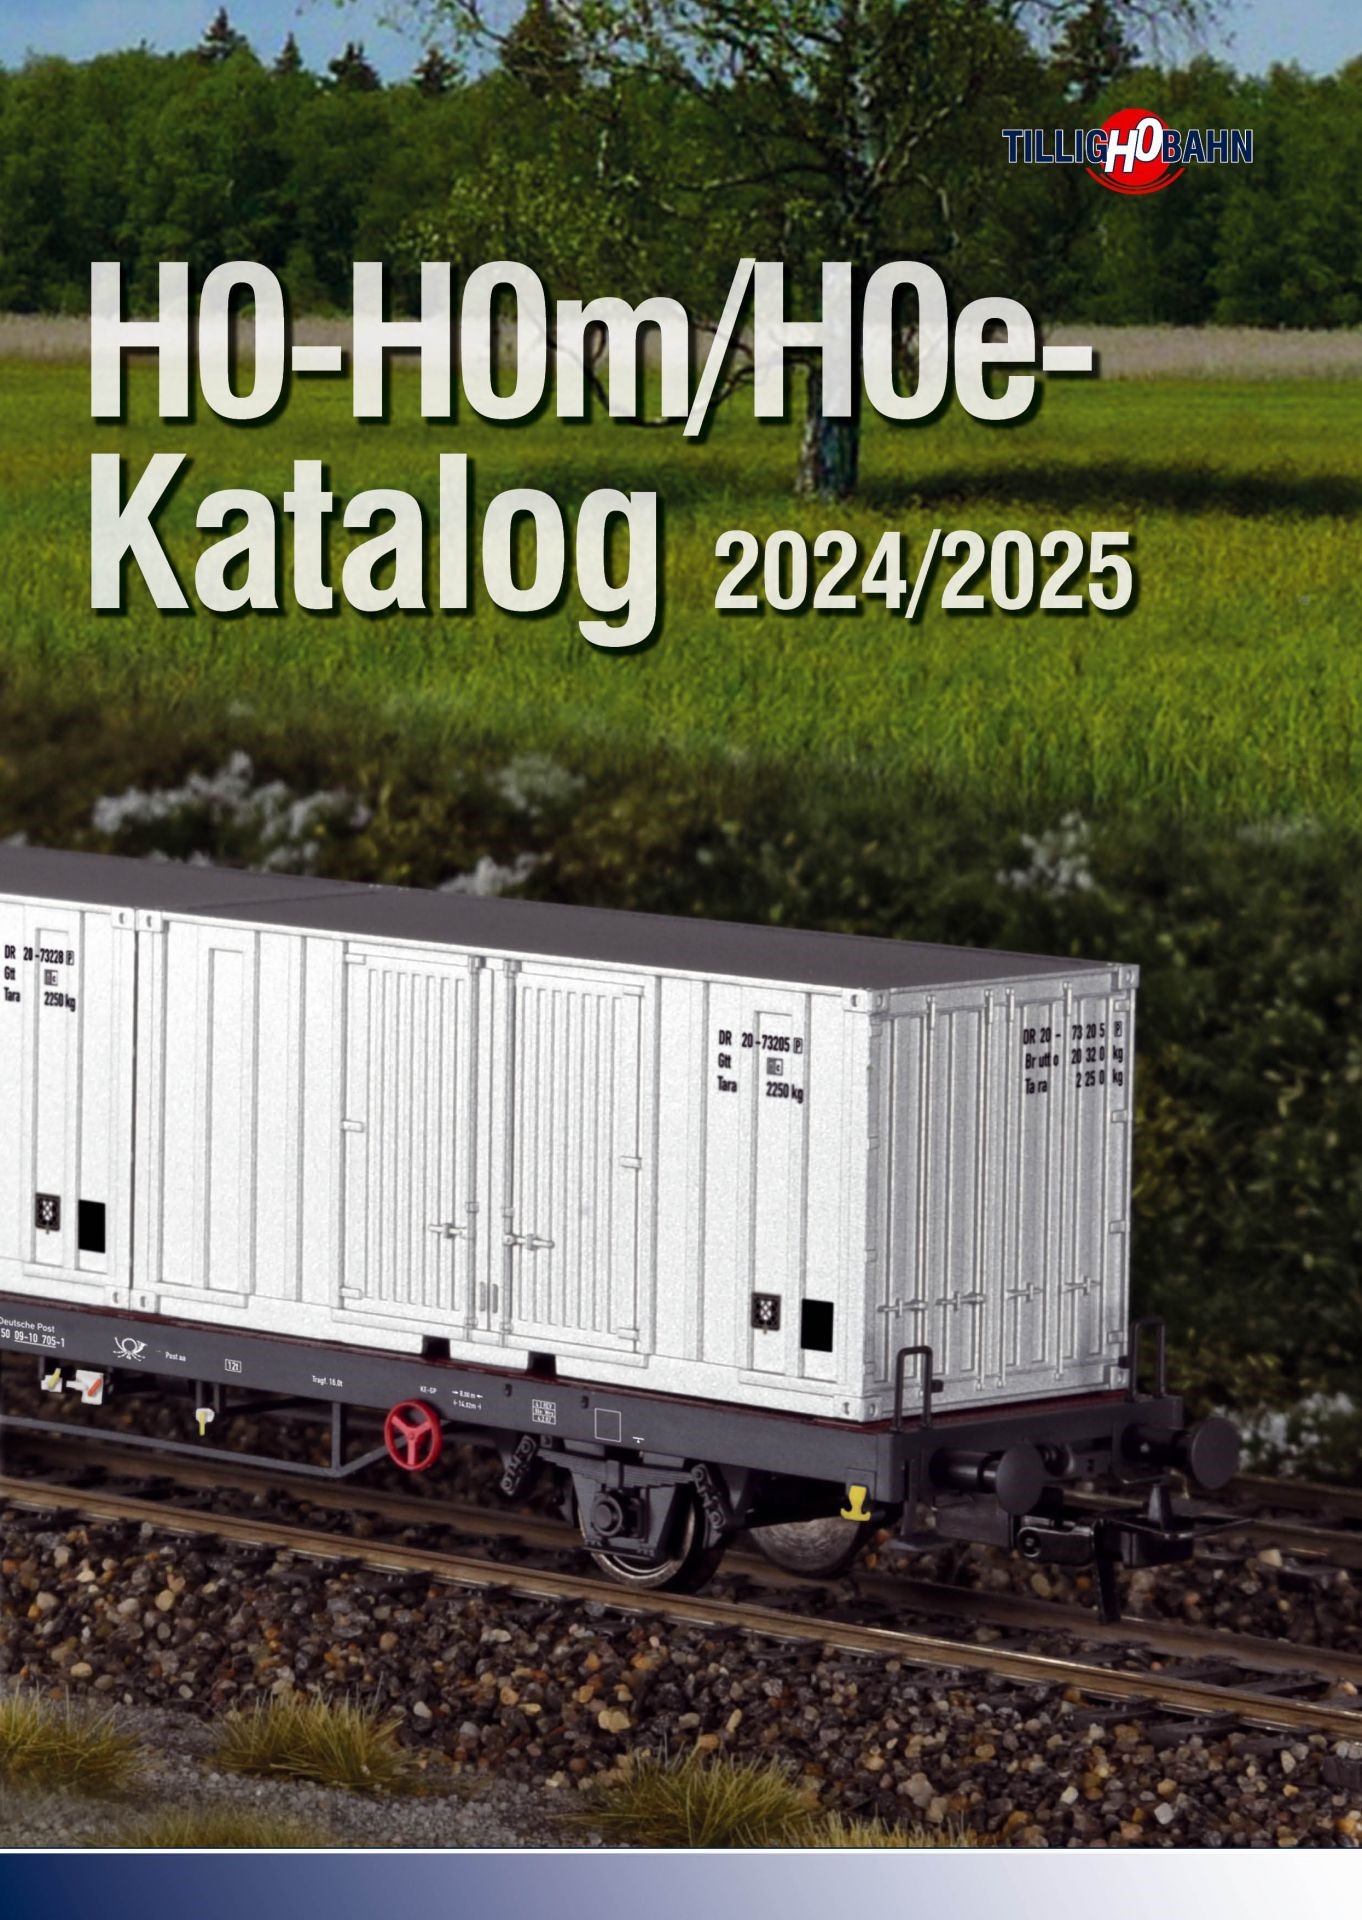 H0-H0m-H0e Katalog 2024/2025 H0 und H0e/H0m Schmalspur-Katalog